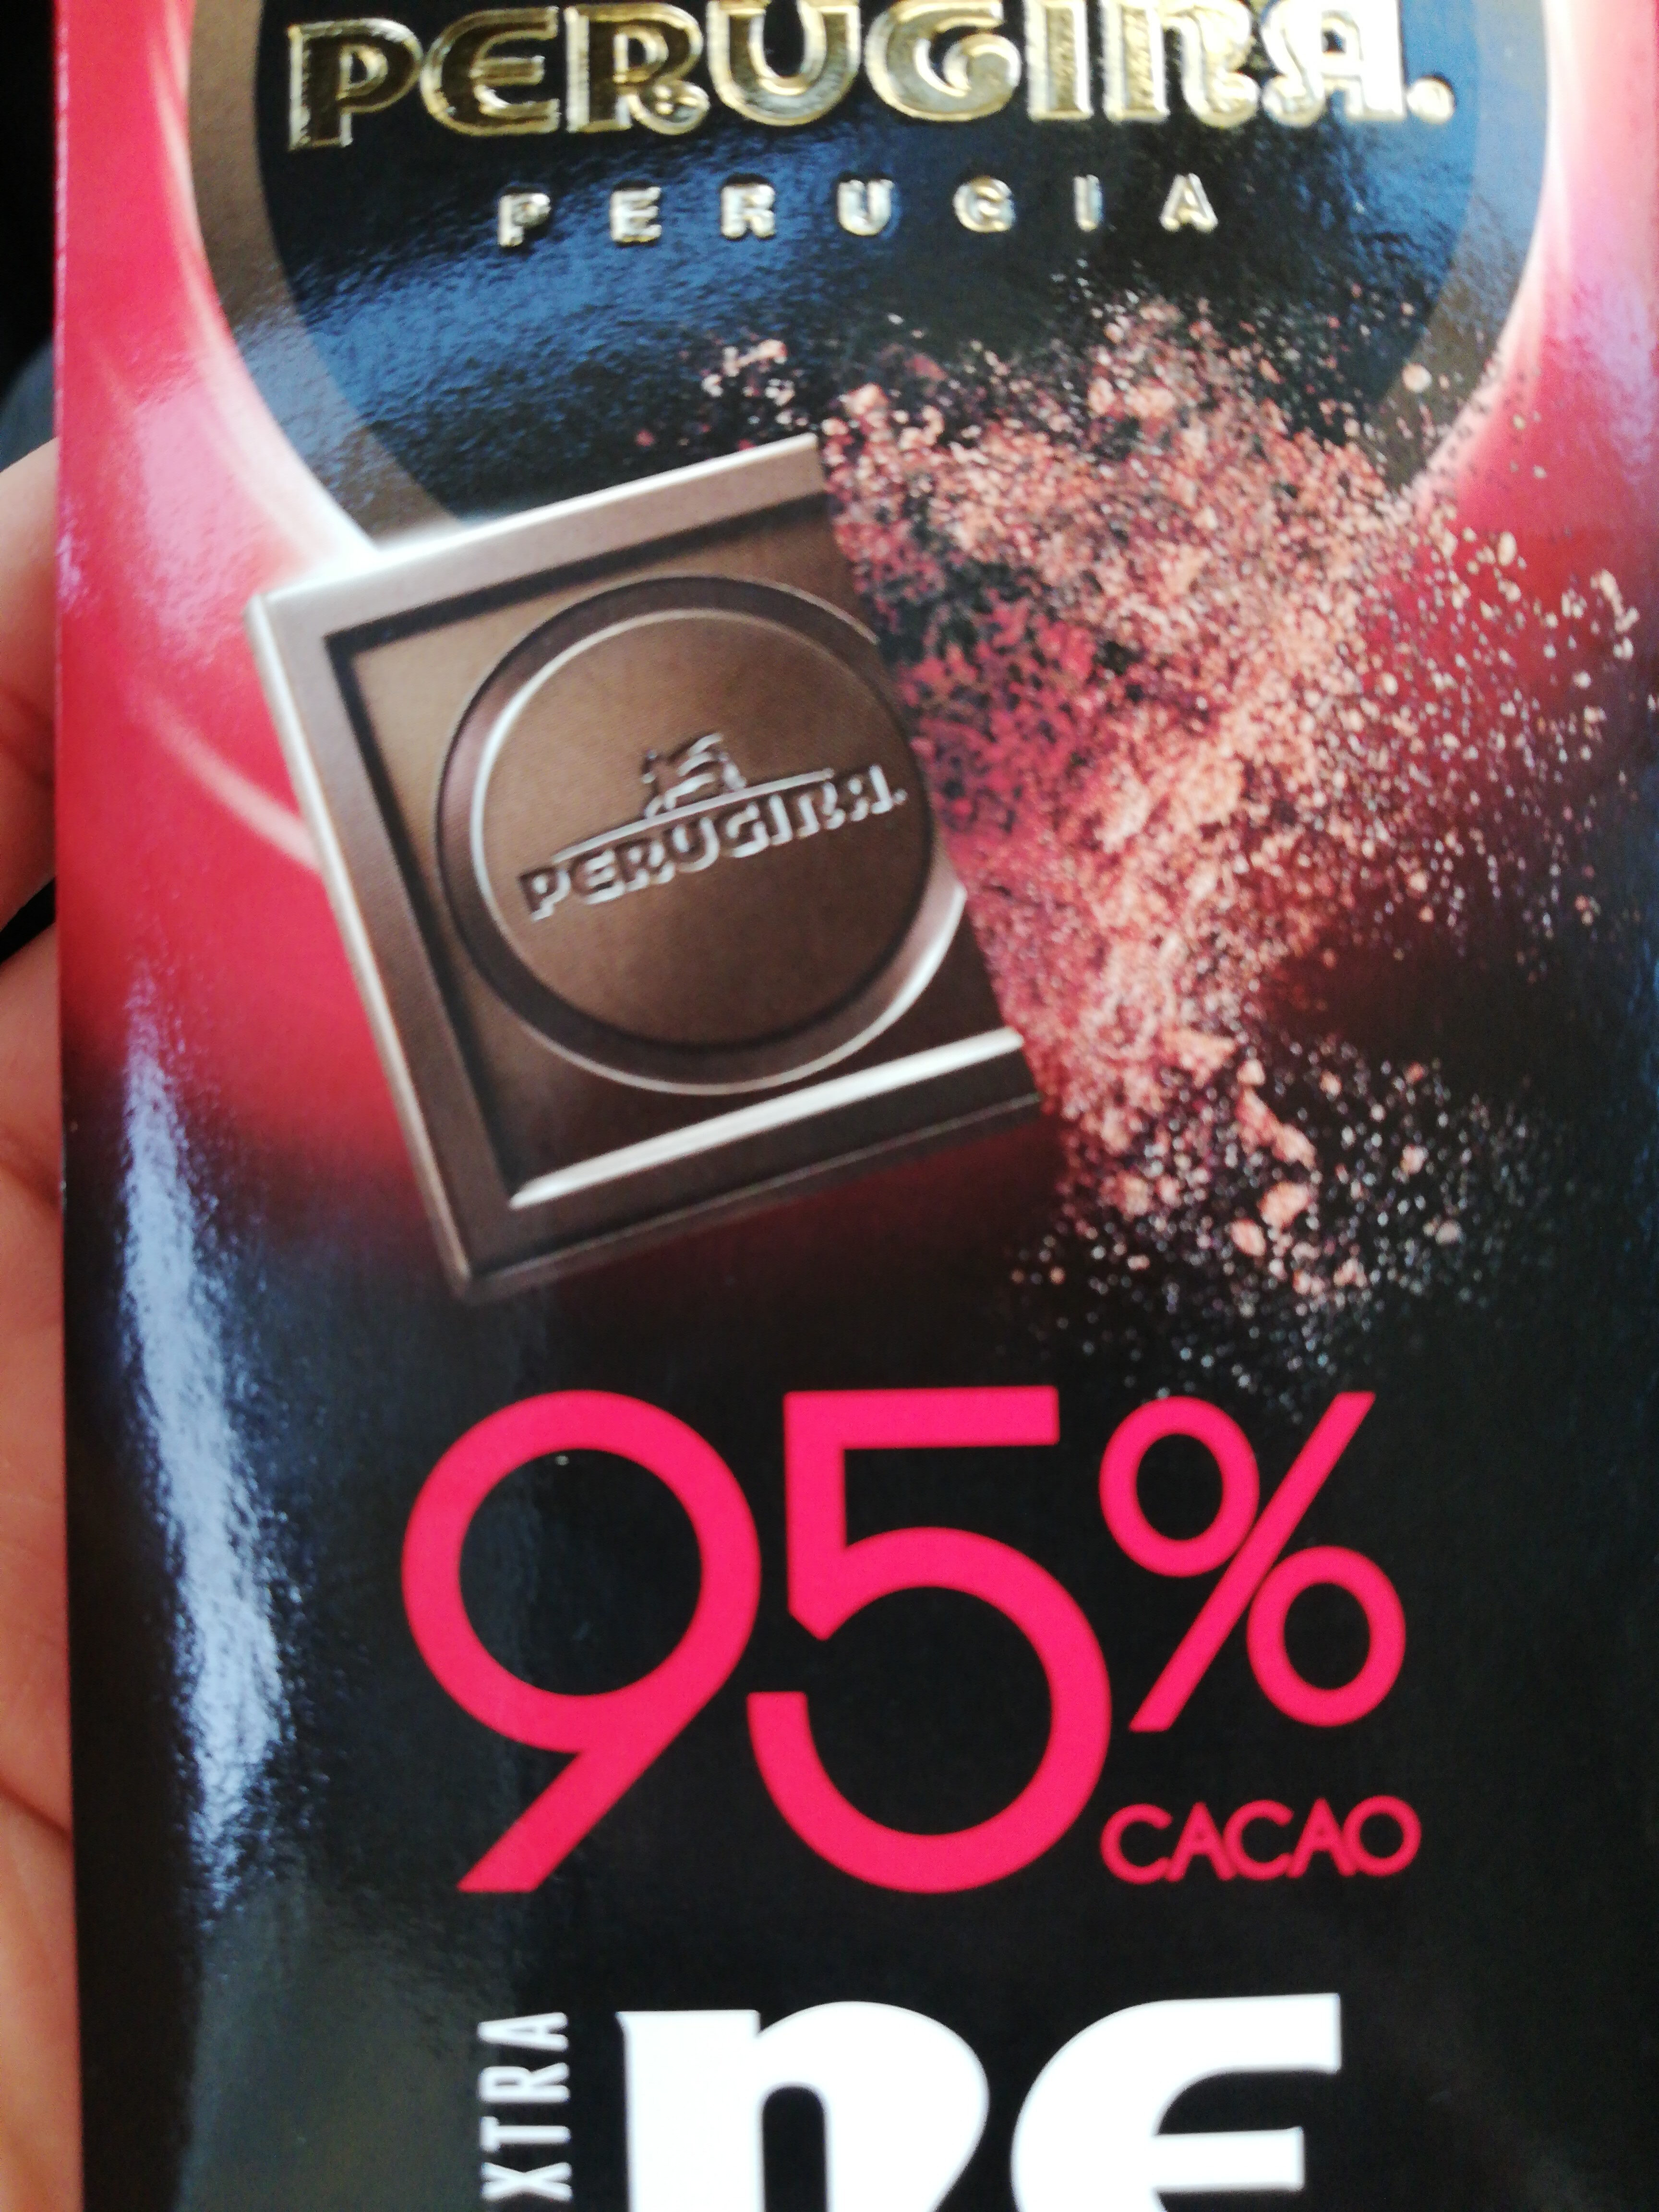 nero 95% - Product - it